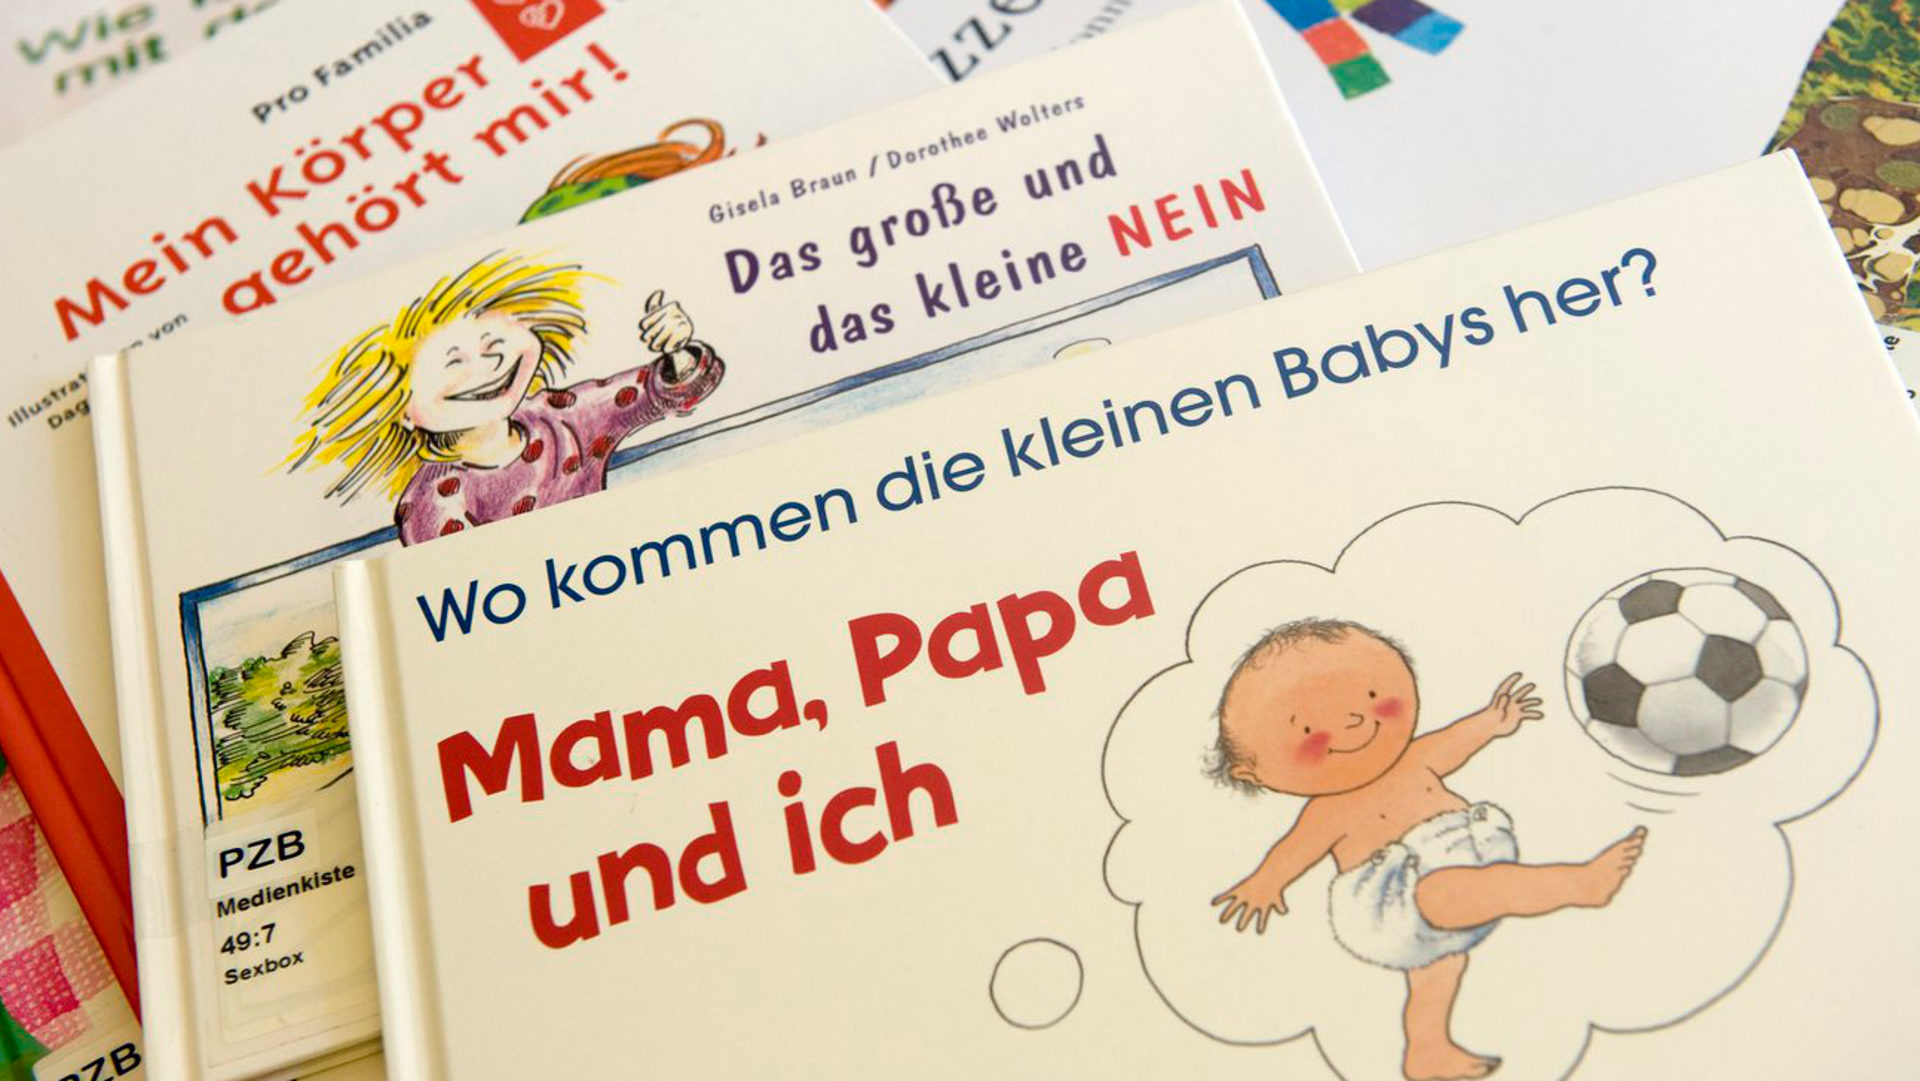 Bücher aus der "Sex-Box" für den Sexualkundeunterricht in Basel